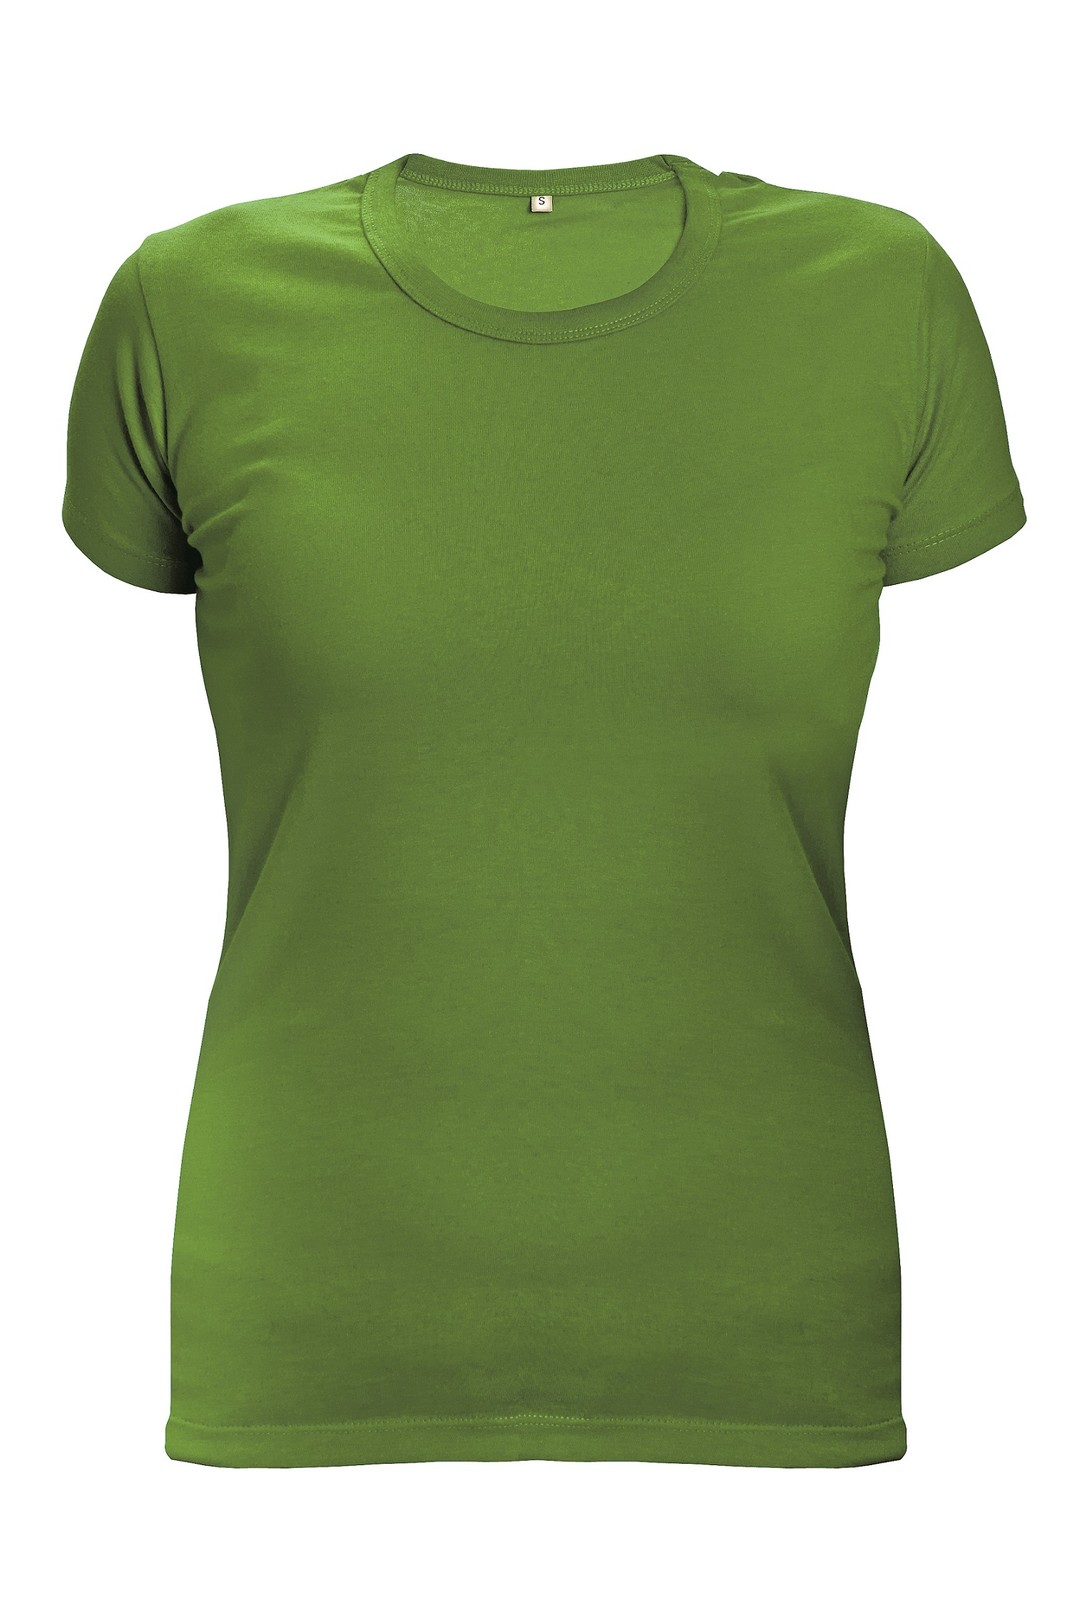 Dámske tričko s krátkym rukávom Surma Lady - veľkosť: L, farba: limetková